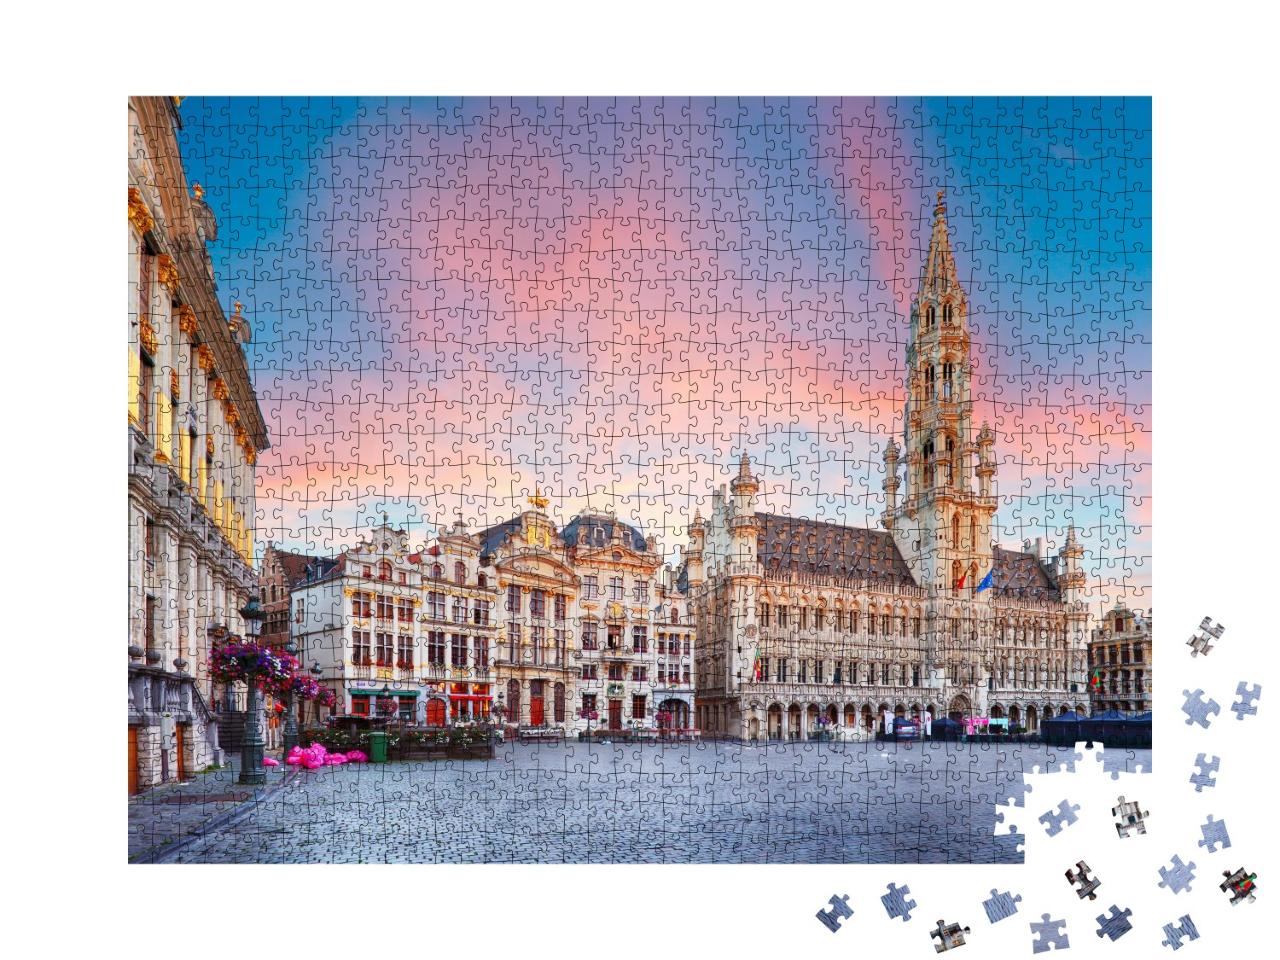 Puzzle de 1000 pièces « Ambiance de soirée à Bruxelles, Belgique »